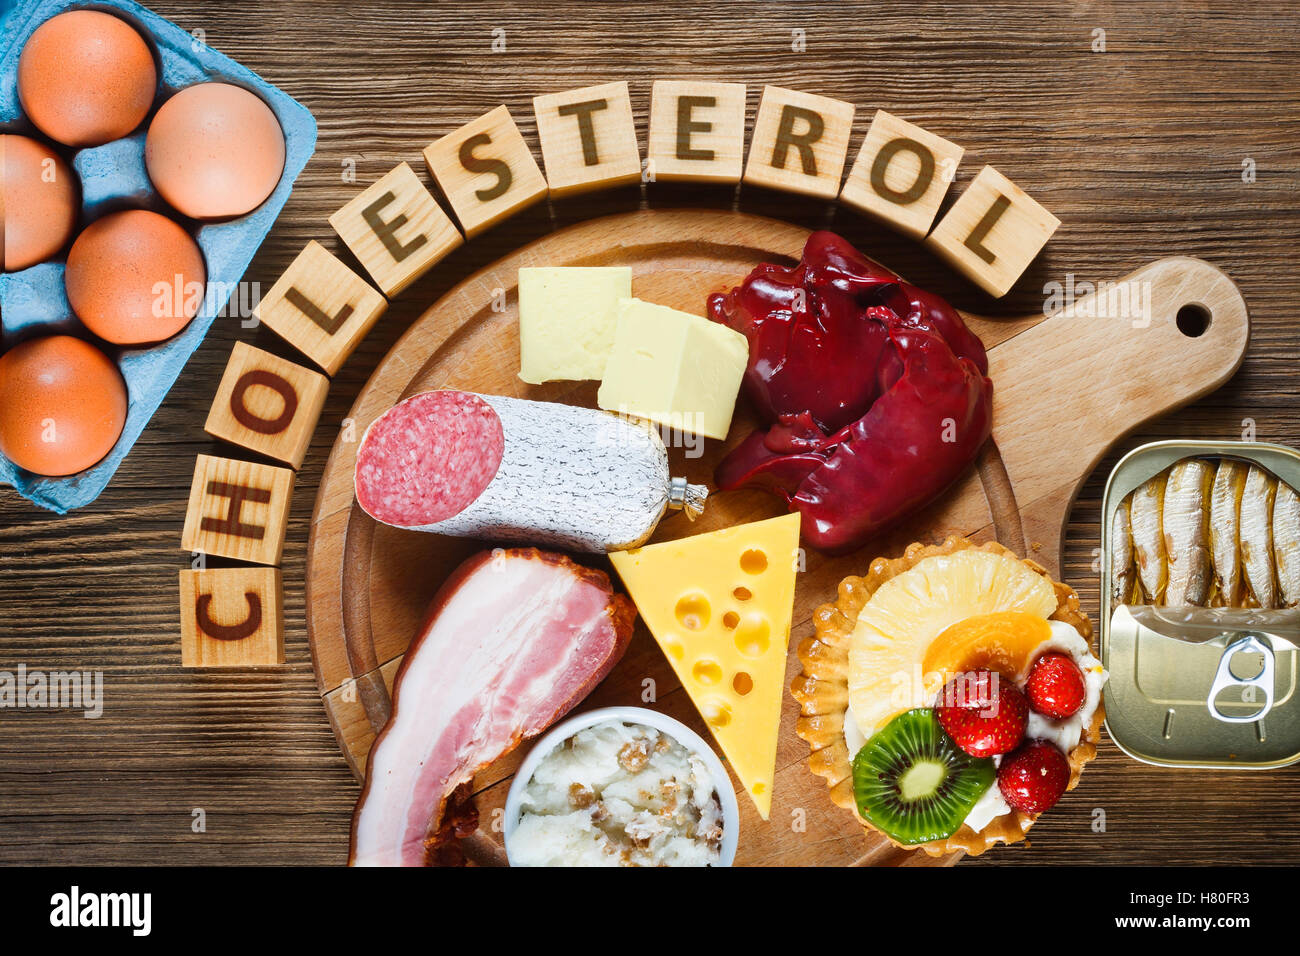 Lebensmittel reich an Cholesterin wie Eiern, Leber, gelben Käse, Butter, Speck, Schmalz mit Zwiebeln, Sardinen in Öl und süßes Dessert - cup Stockfoto